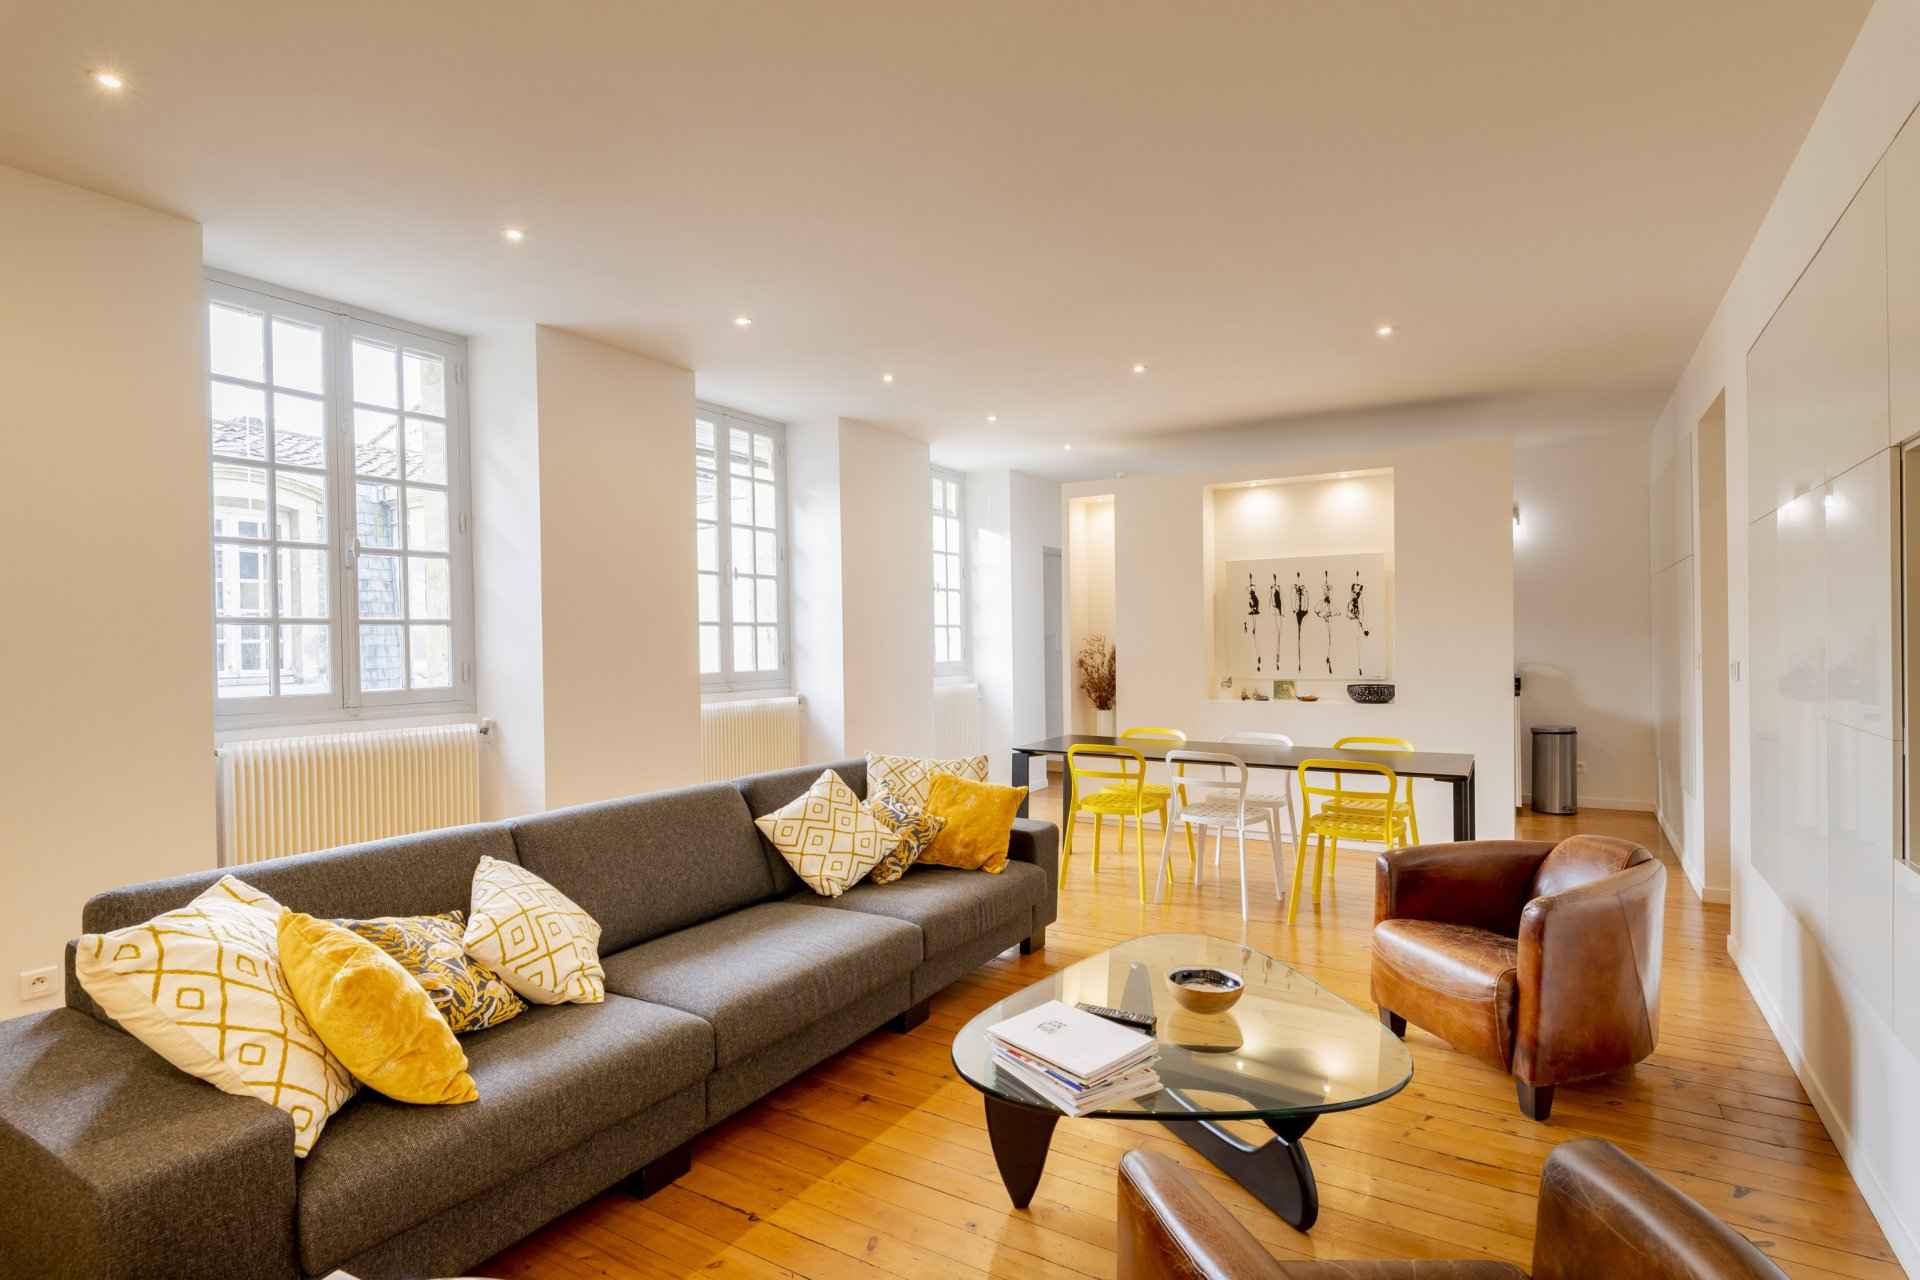 À vendre Appartement Bordeaux Jardin Public 119 m² - 2 chambres